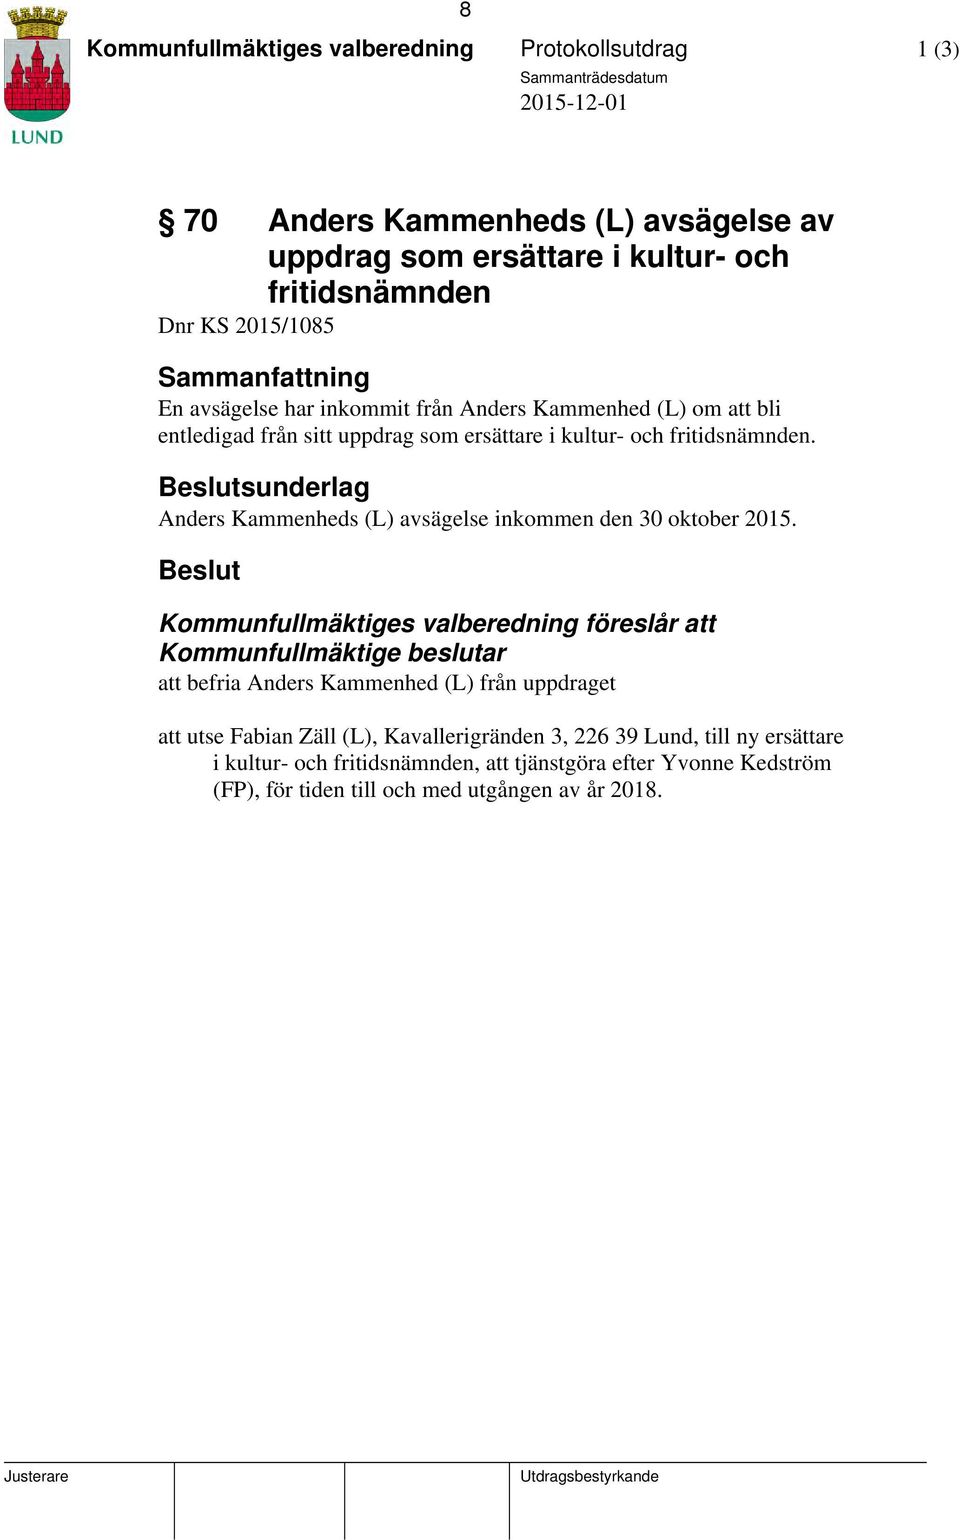 Beslutsunderlag Anders Kammenheds (L) avsägelse inkommen den 30 oktober 2015.